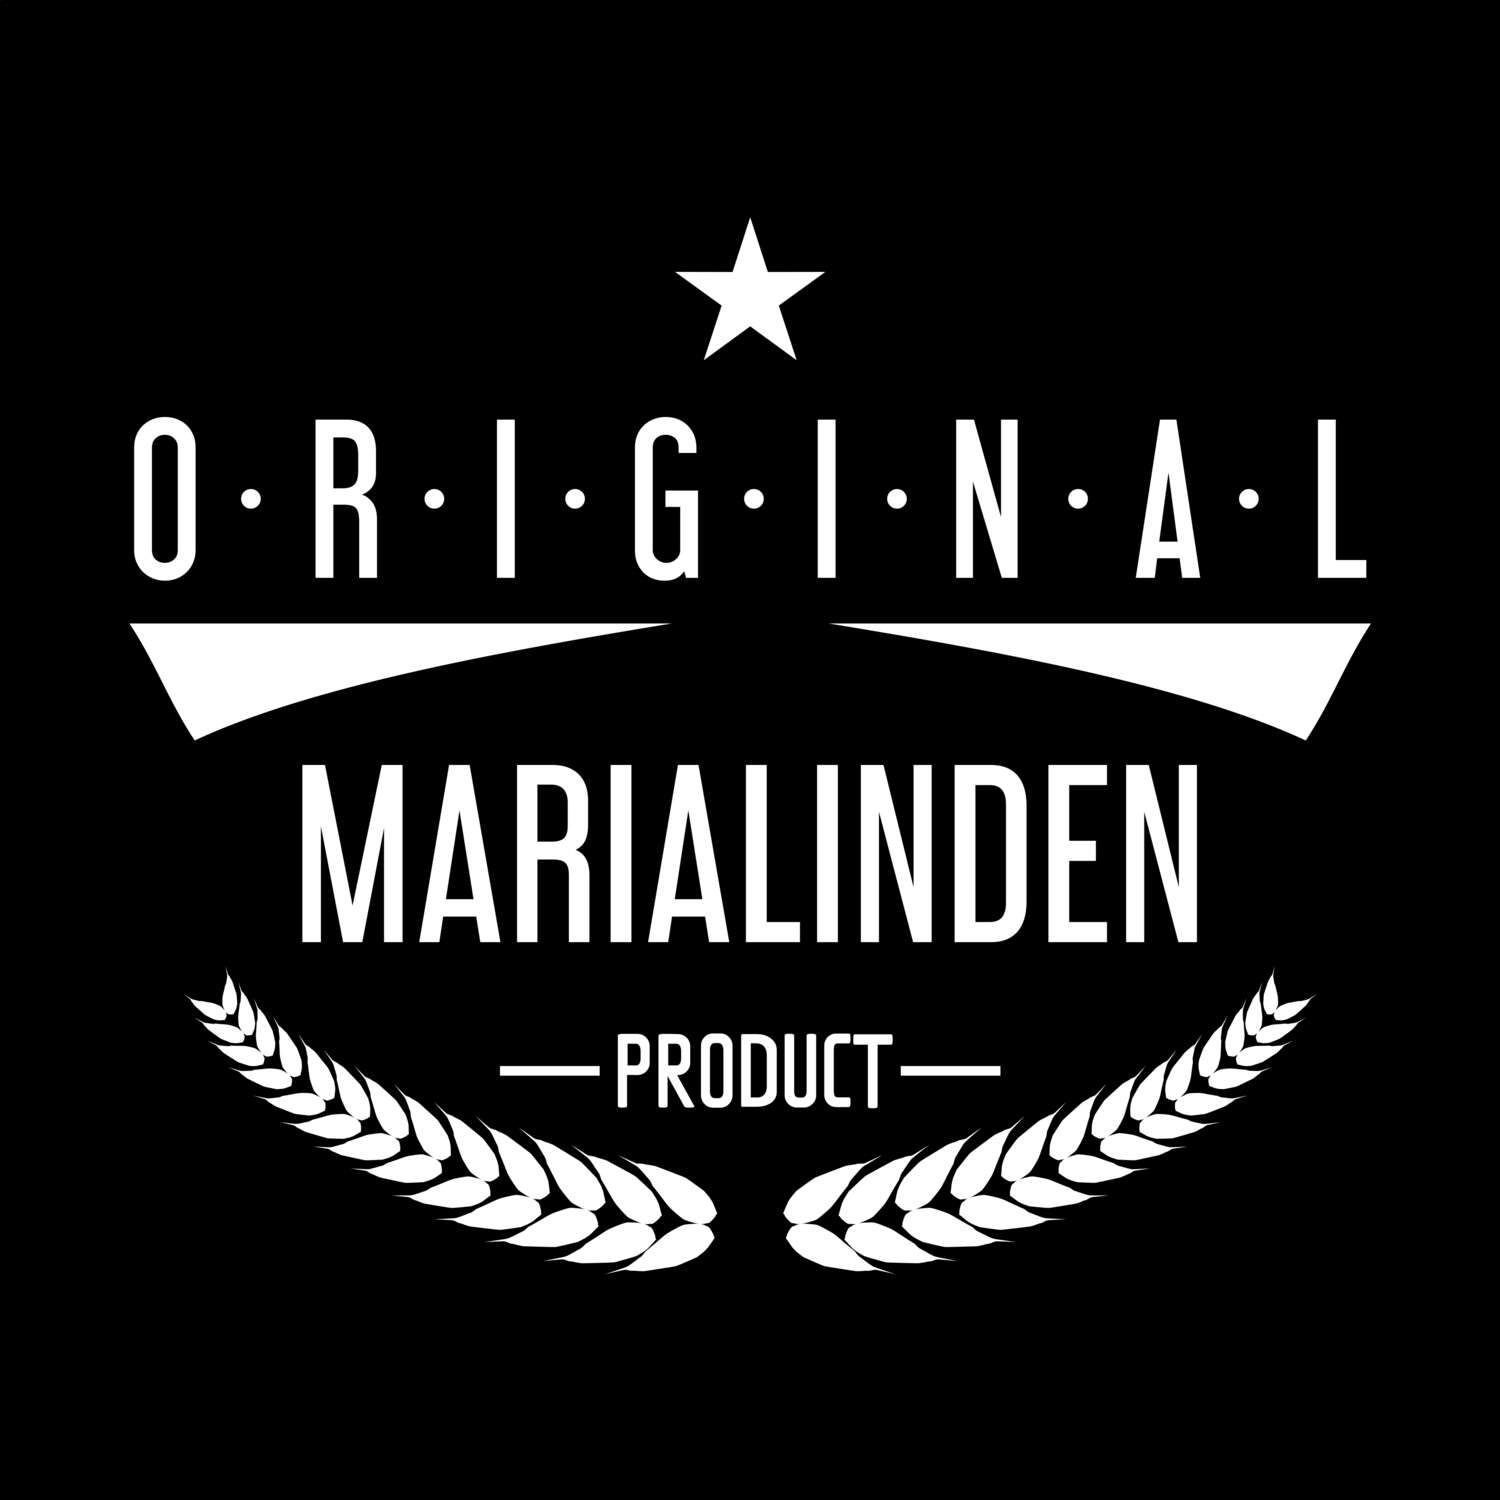 Marialinden T-Shirt »Original Product«